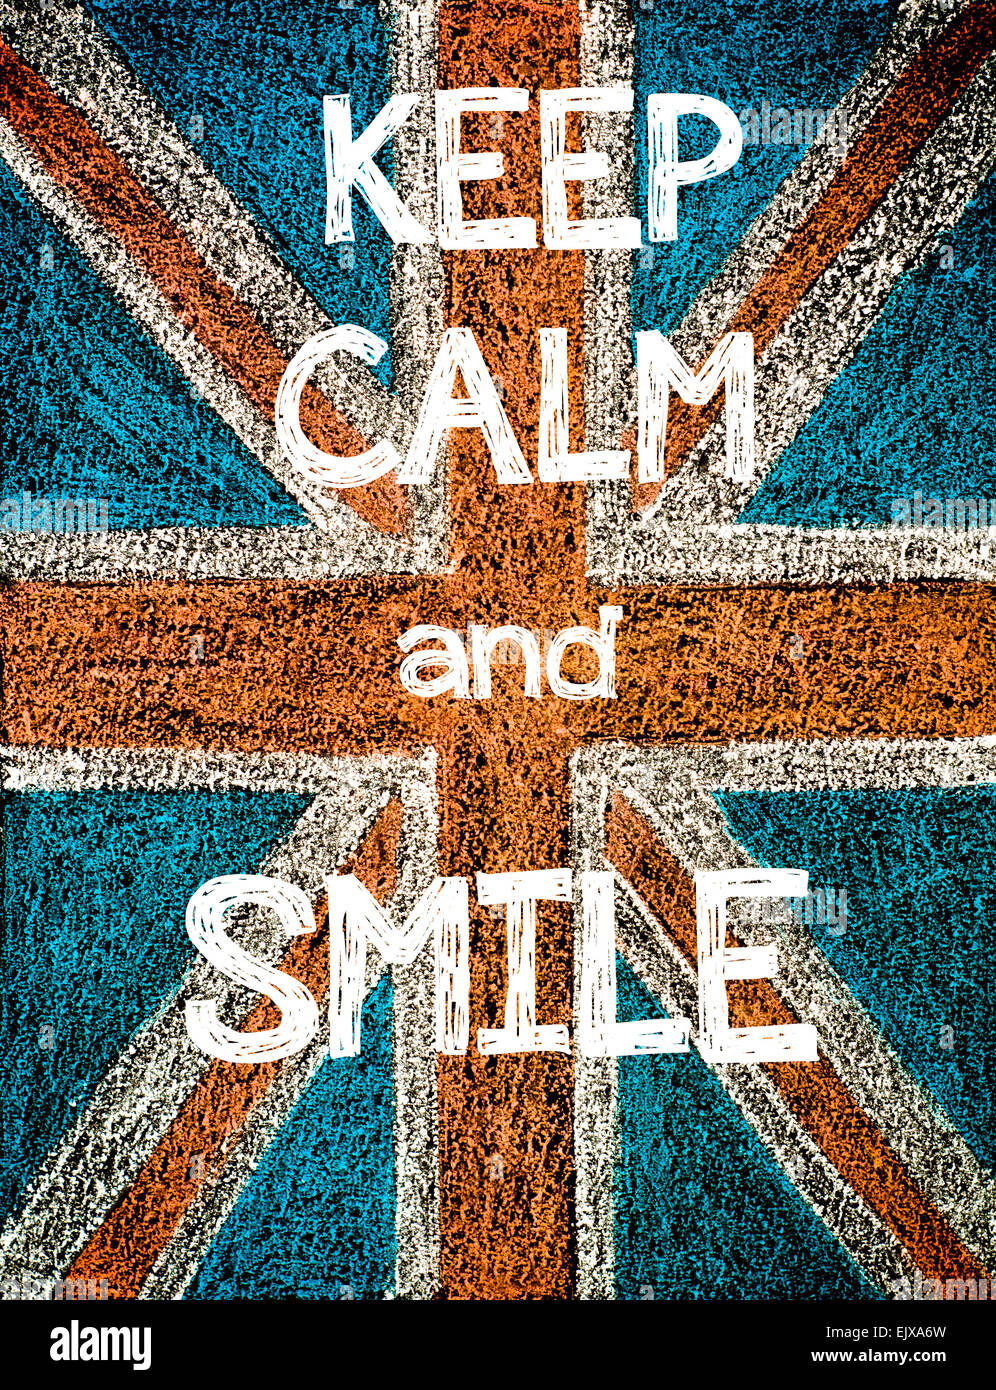 Mantener la calma y la sonrisa. Reino Unido (British Union Jack) bandera, vintage de dibujo a mano alzada con tiza en el pizarrón, humor imagen concepto Foto de stock